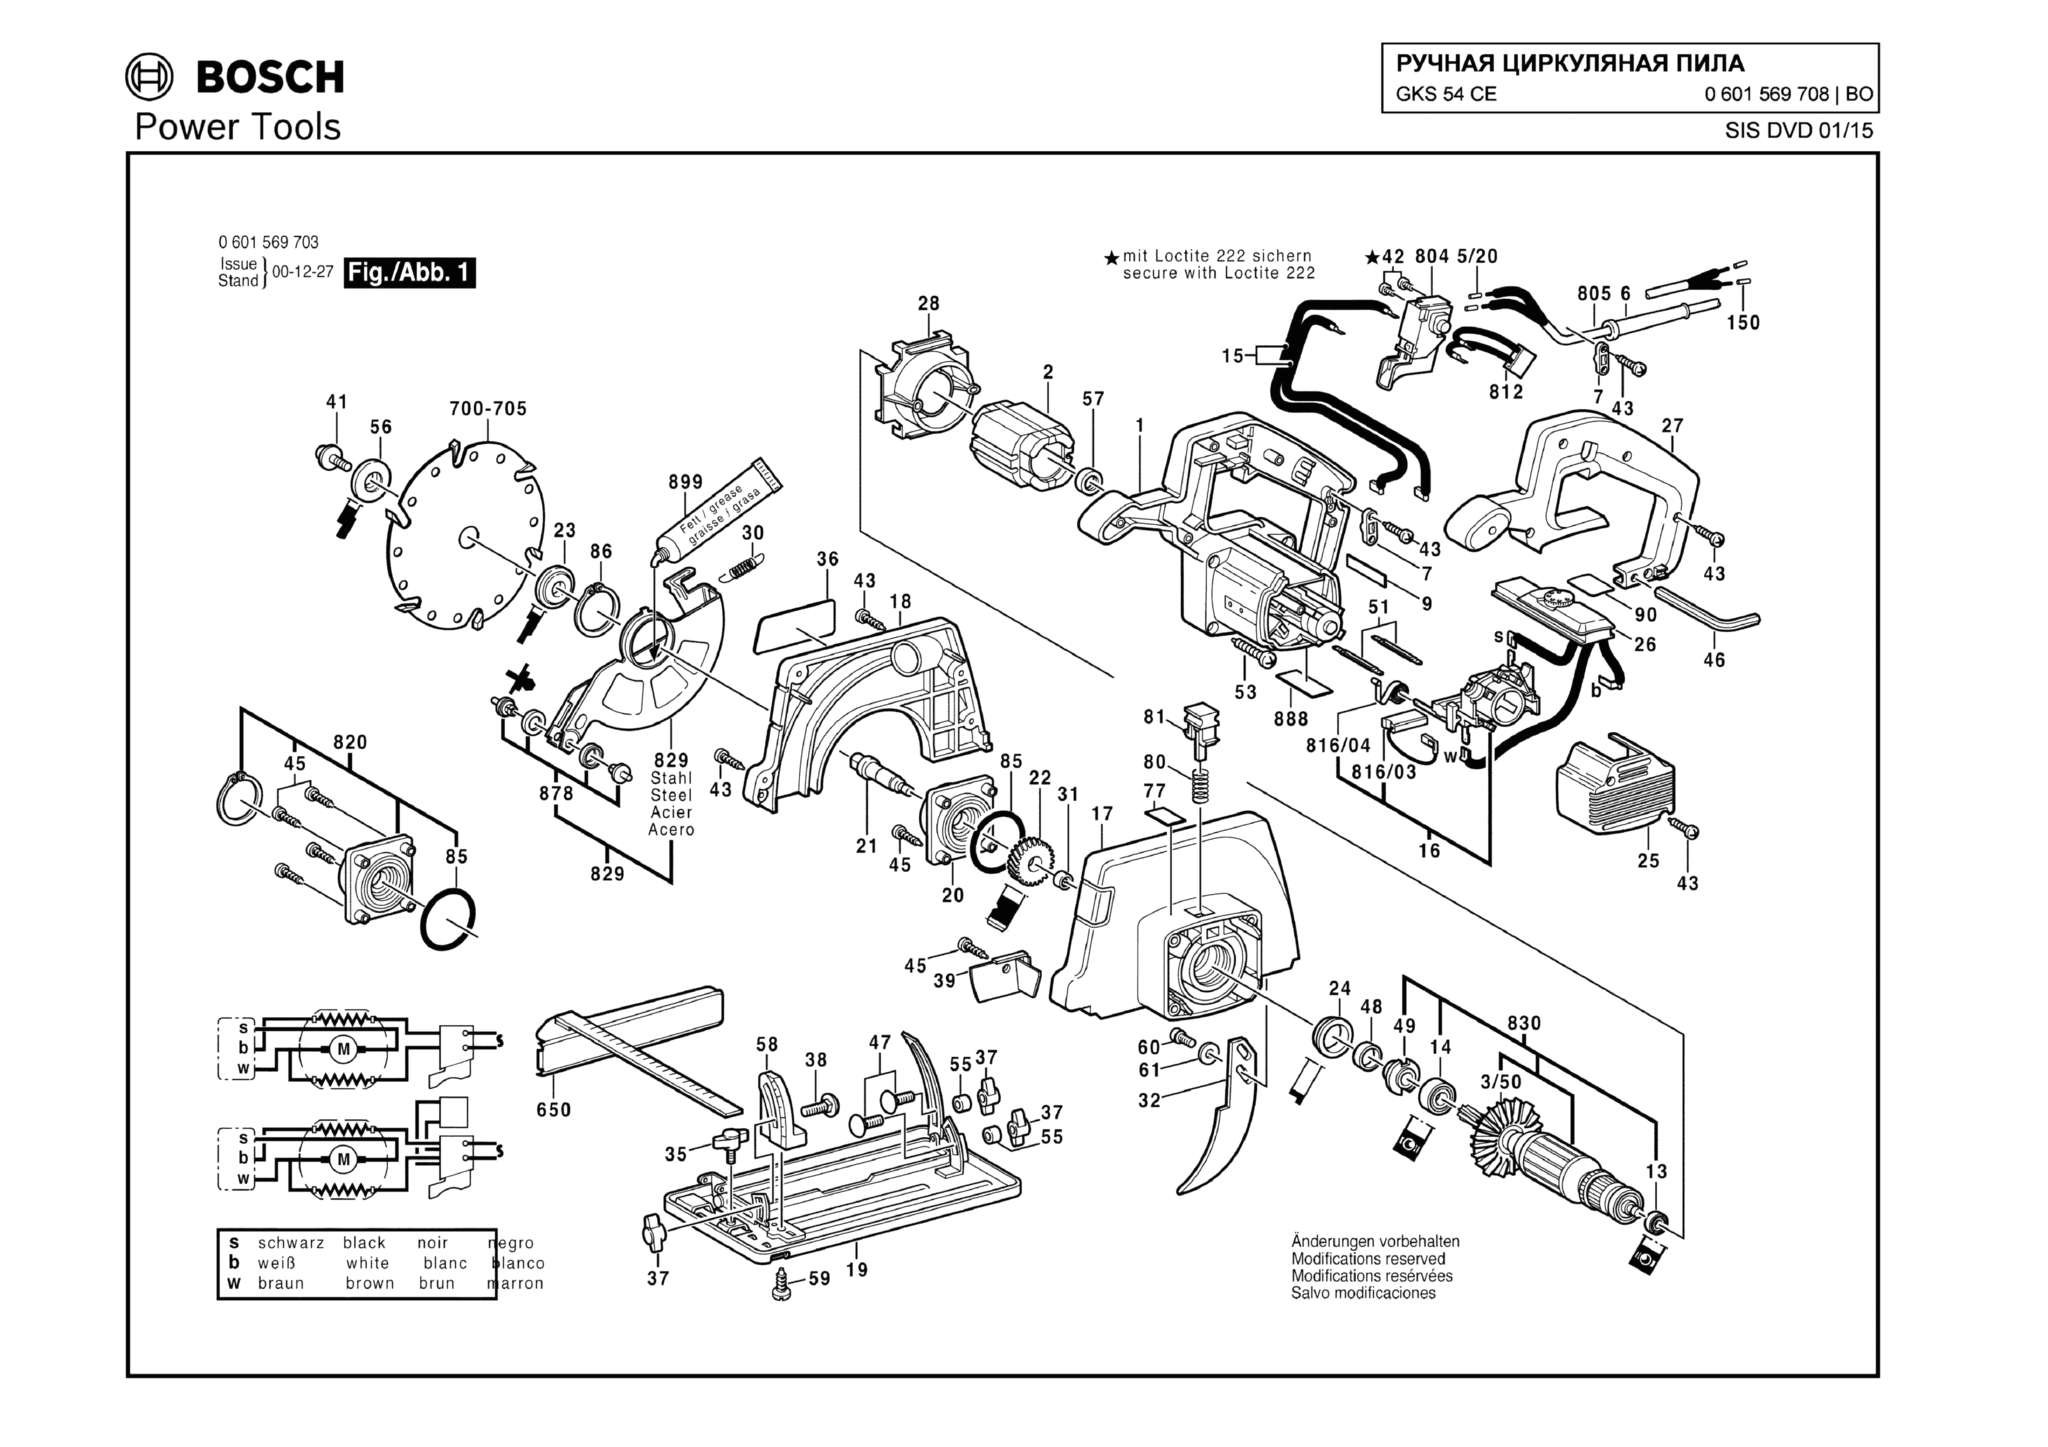 Запчасти, схема и деталировка Bosch GKS 54 CE (ТИП 0601569708)